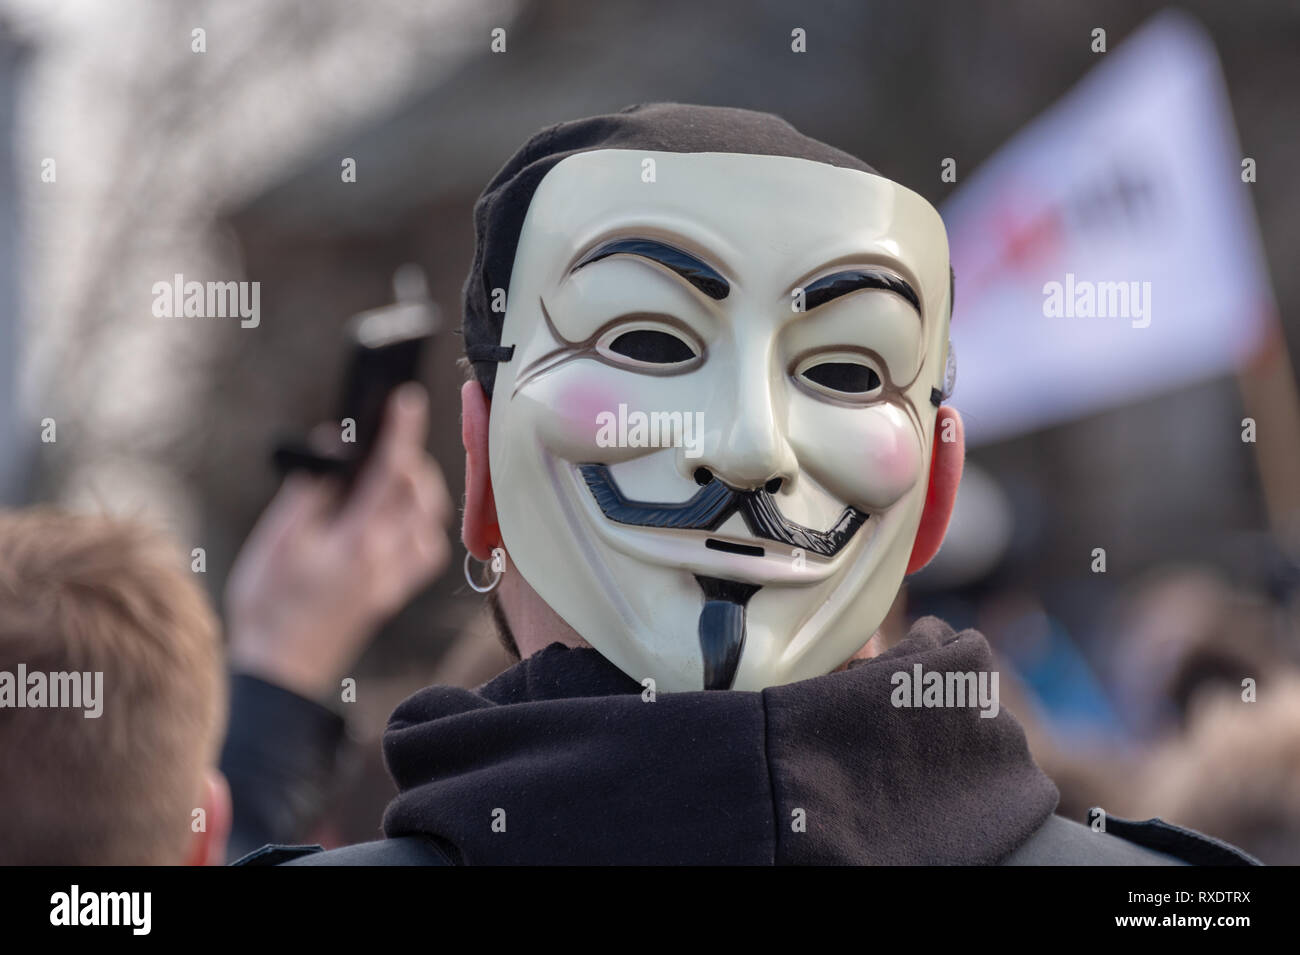 En Magdeburgo, Alemania - 9 Marzo, 2019: : Un manifestante lleva una máscara anónima. El hombre tomó parte en una manifestación en Magdeburgo en 1000 mayormente jóvenes contra la UE la reforma del copyright. Los manifestantes temen la censura de Internet, si se aplica el artículo 13. Crédito: Mattis Kaminer/Alamy Live News Foto de stock